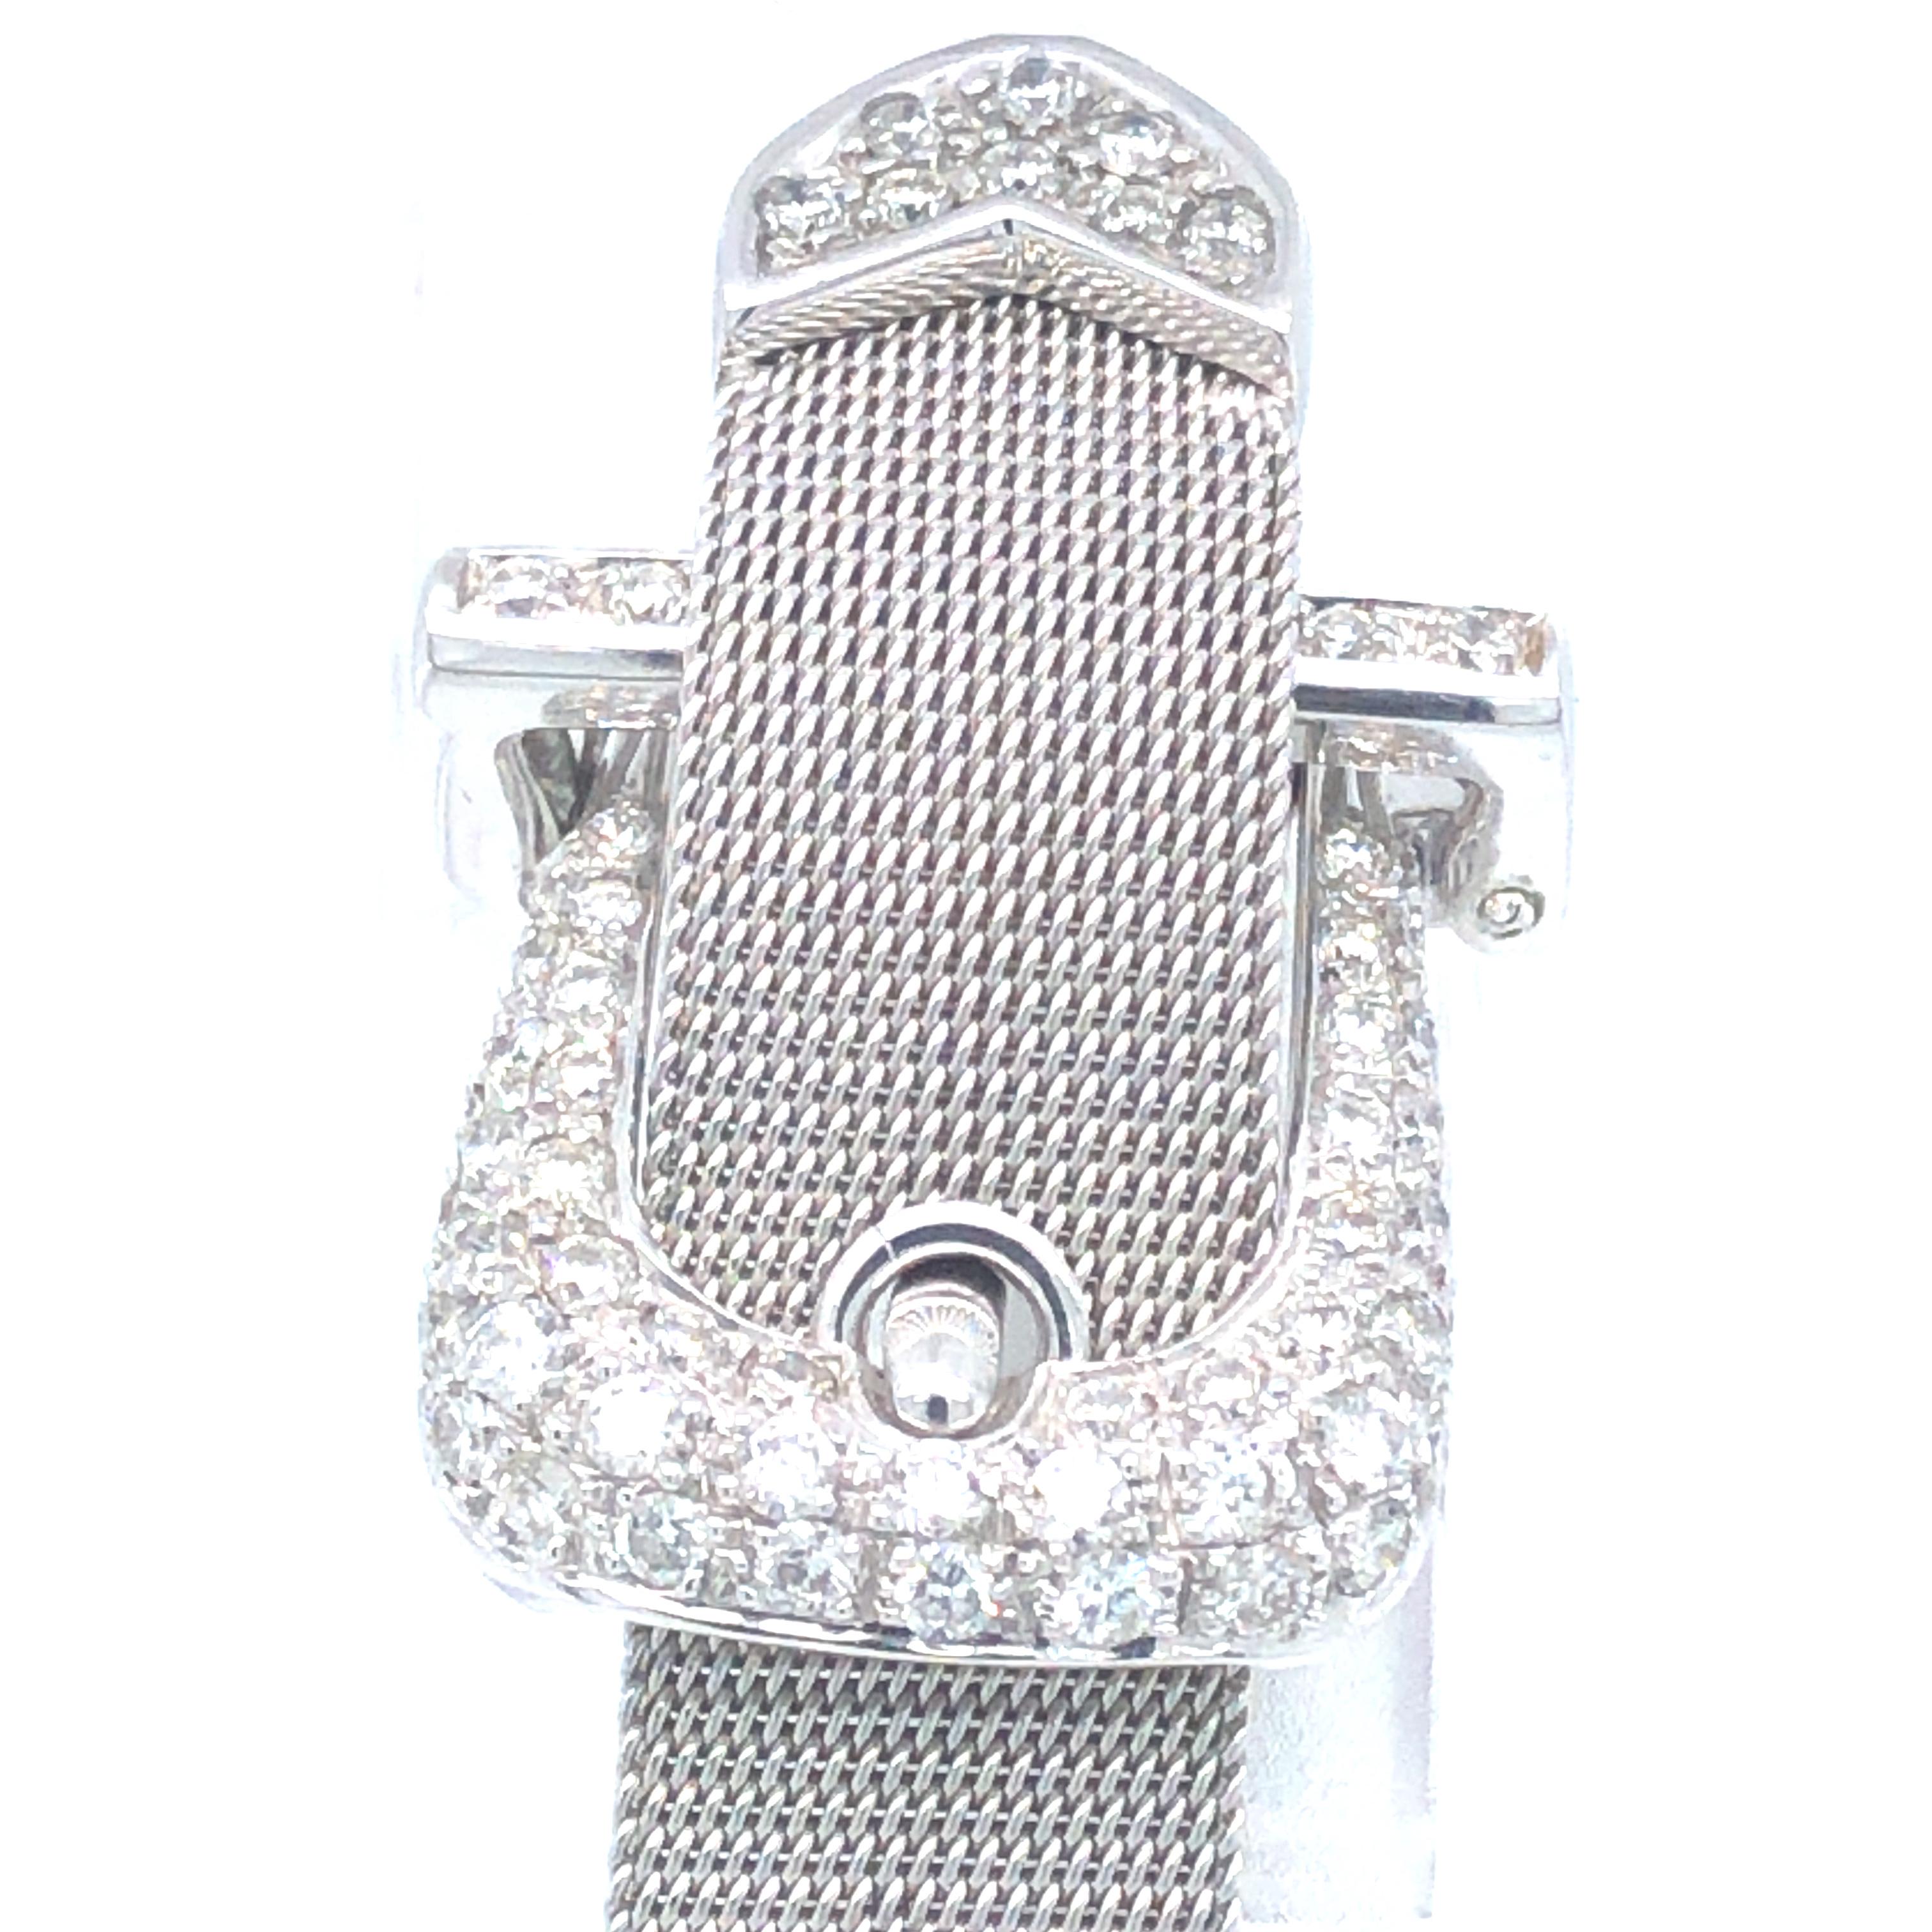 Brilliant Cut Bespoke Diamond Handmadeset Buckle Bracelet